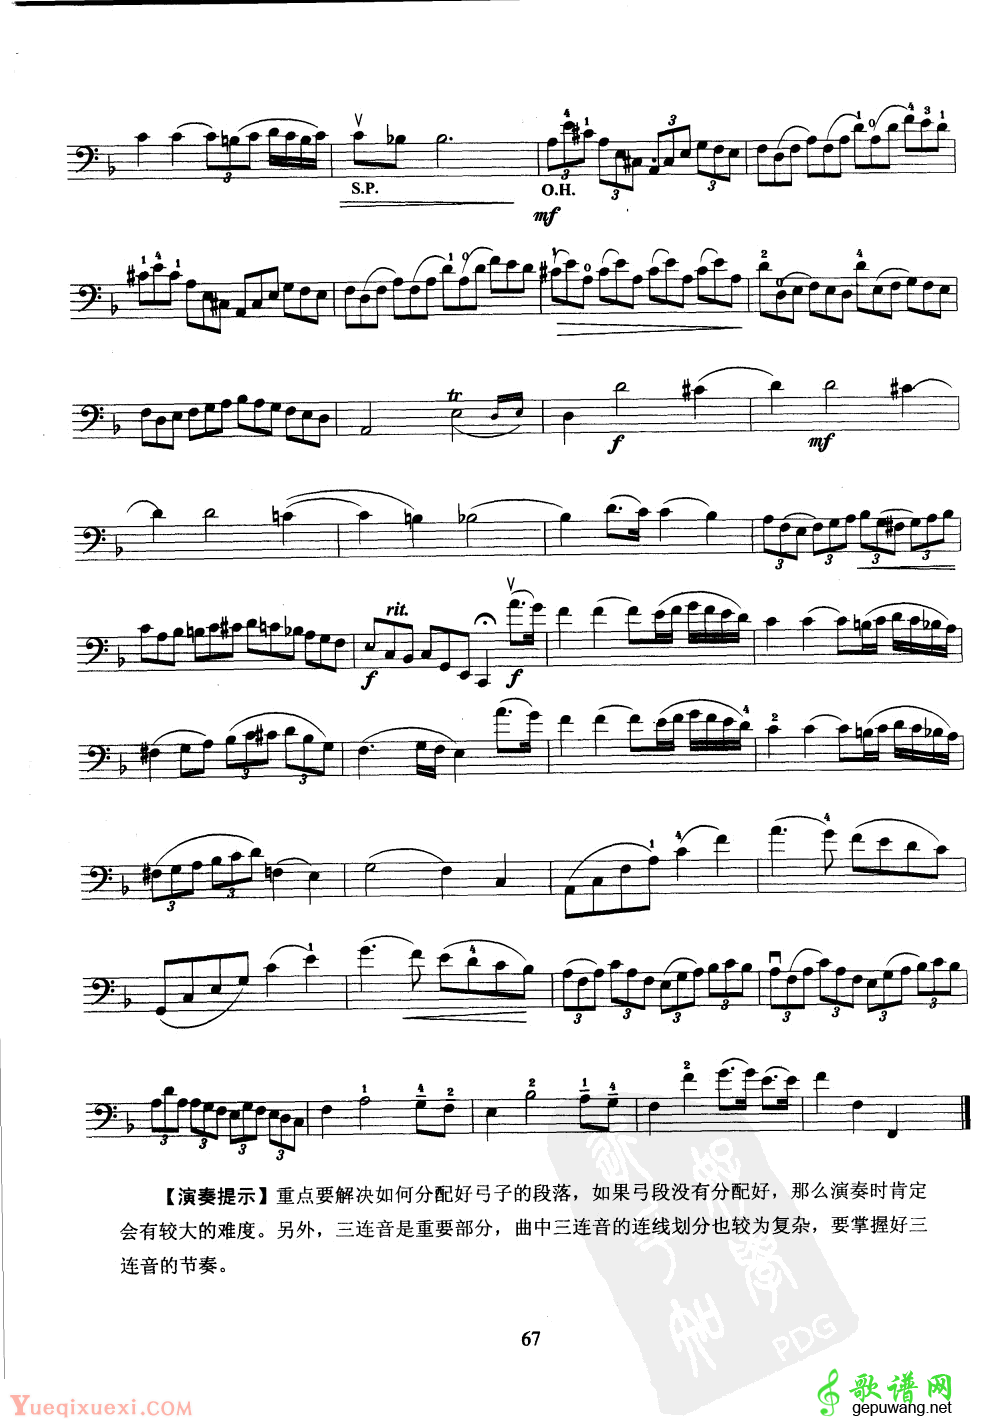 大提琴第七级乐曲练习谱